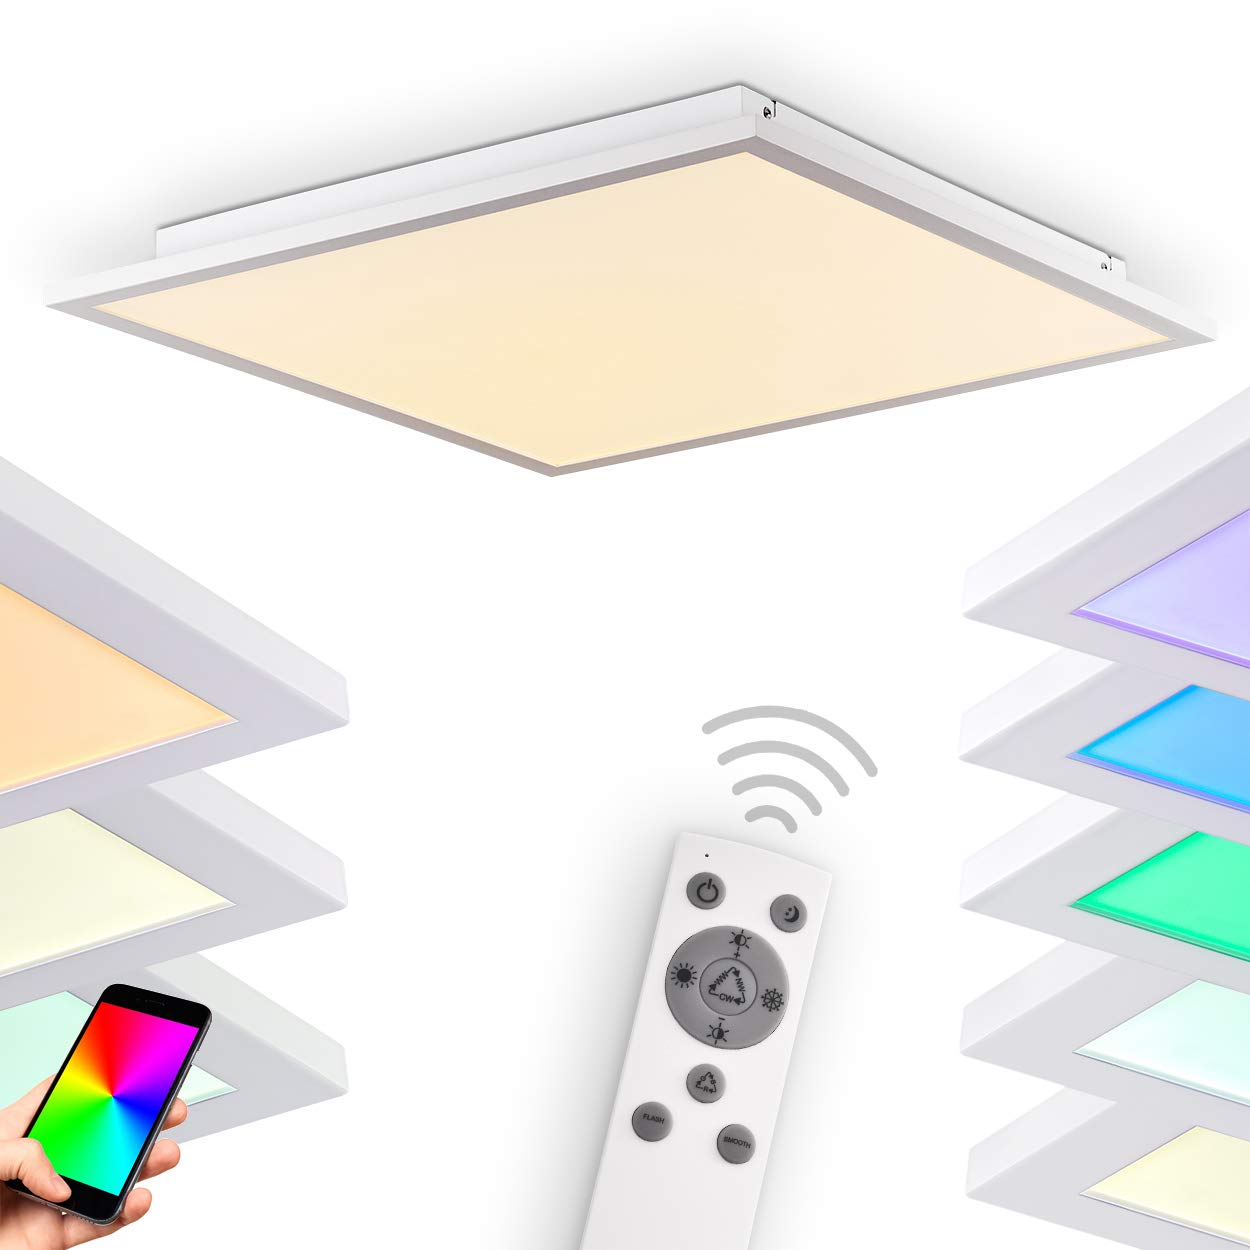 HOFSTEIN LED Panel Salmi, dimmbares Deckenpanel aus Aluminium in Weiß, 36W, 3000-6000 Kelvin, m. RGB-Farbwechsel, bedienbar über Smartphone-App (iOS & Android), Sprachsteuerung o. Fernbedienung